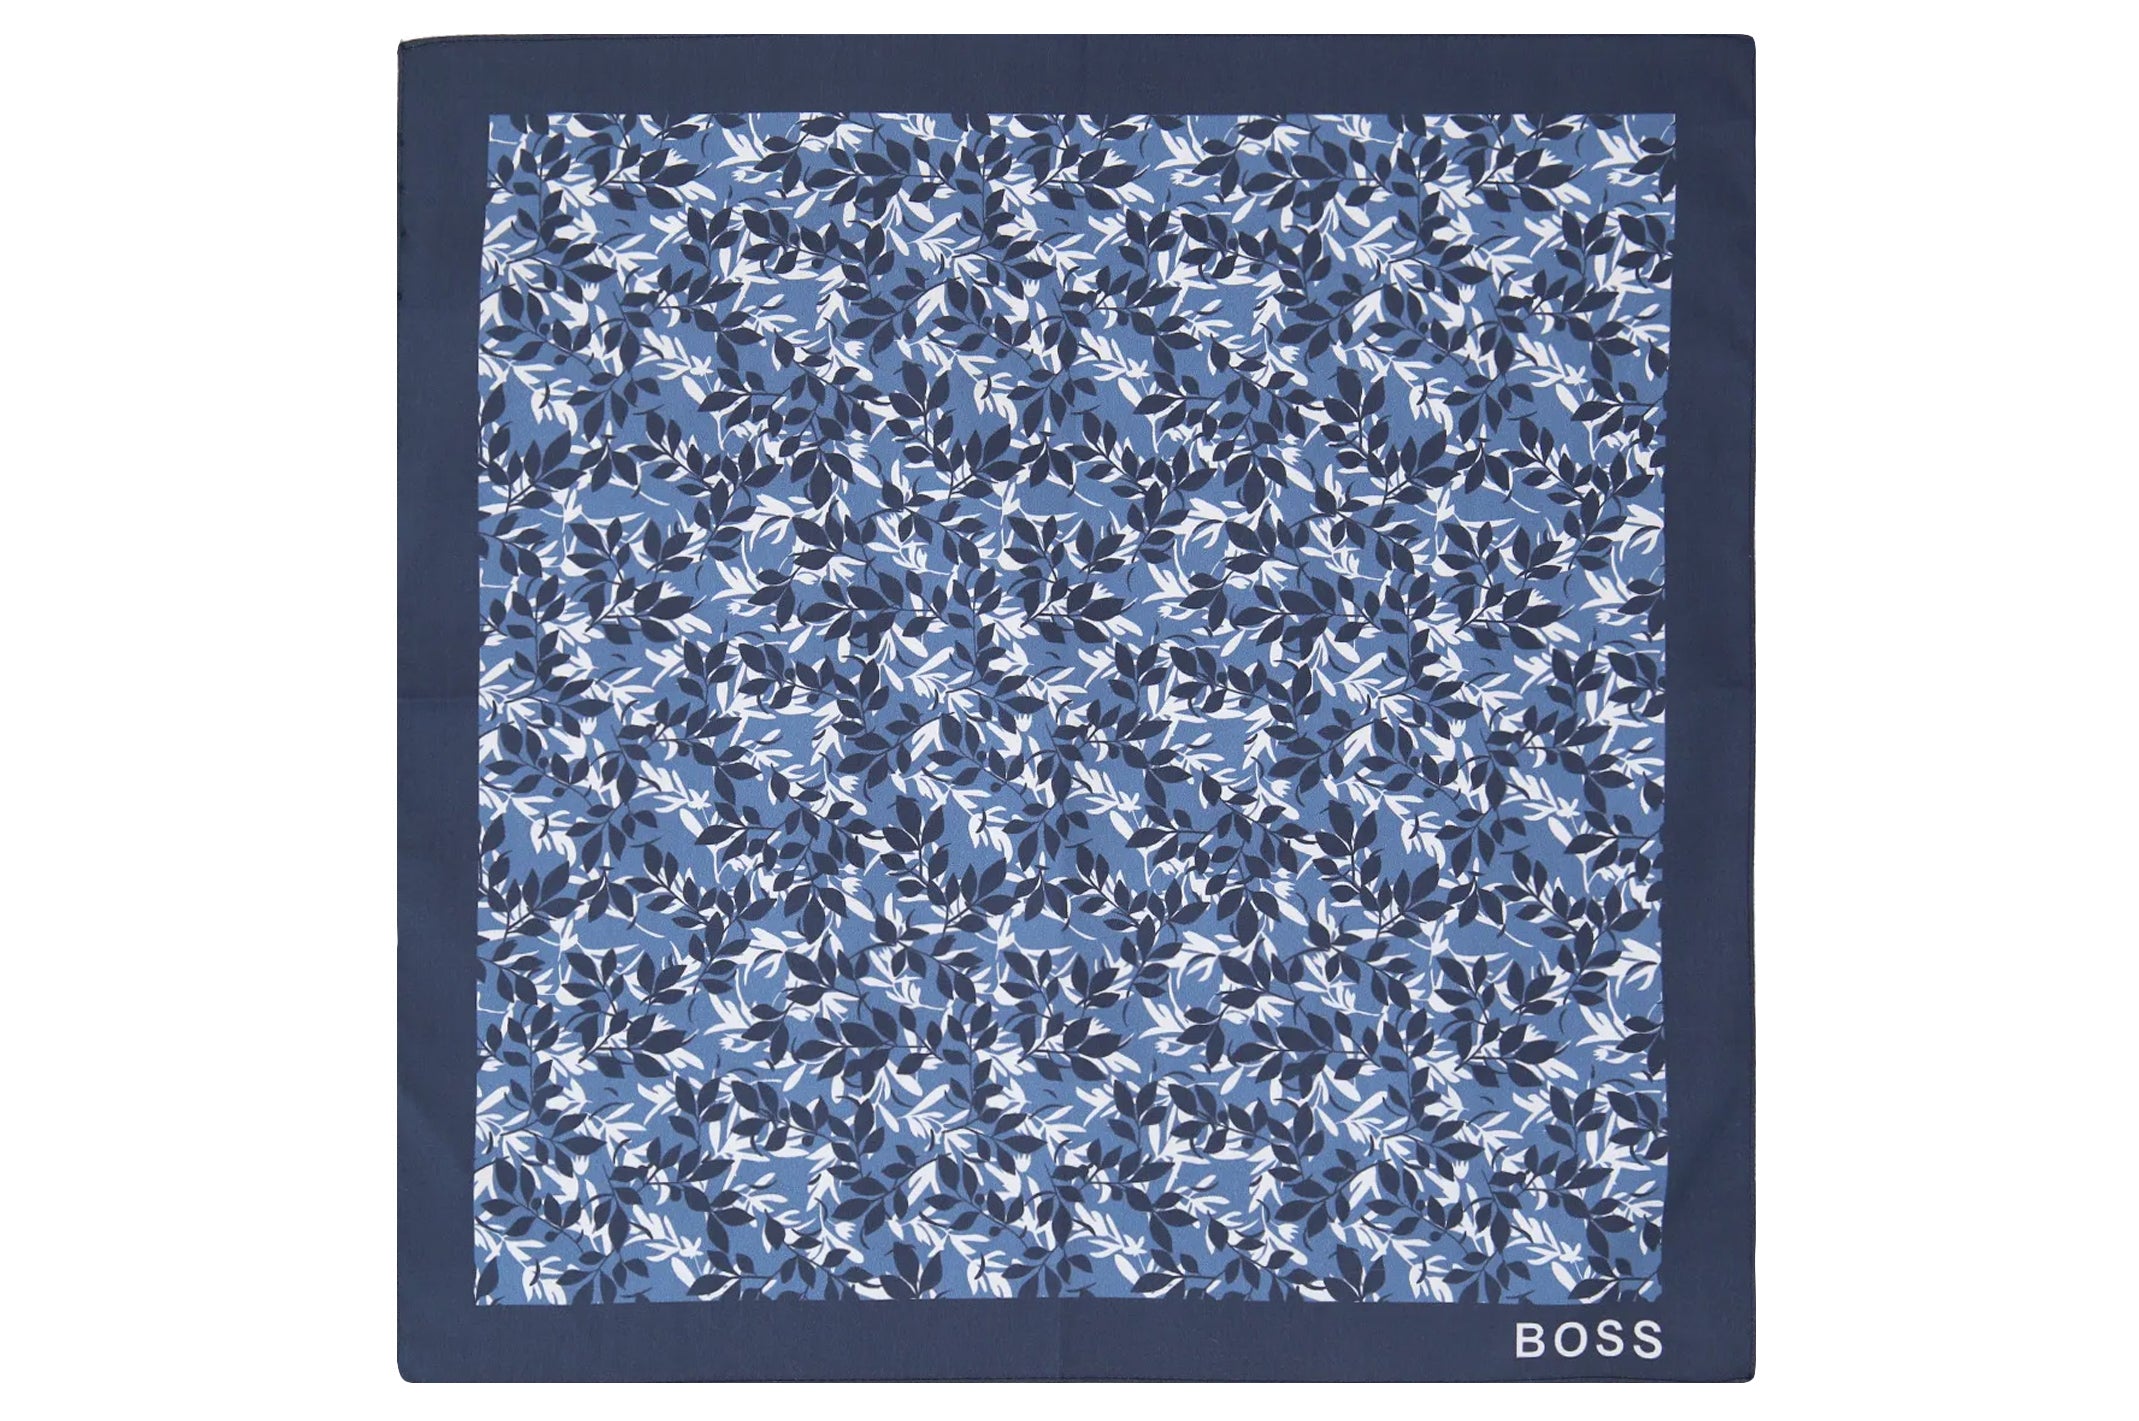 Hugo Boss - POCKET SQUARE in Blue Leaf Print Cotton 50449829